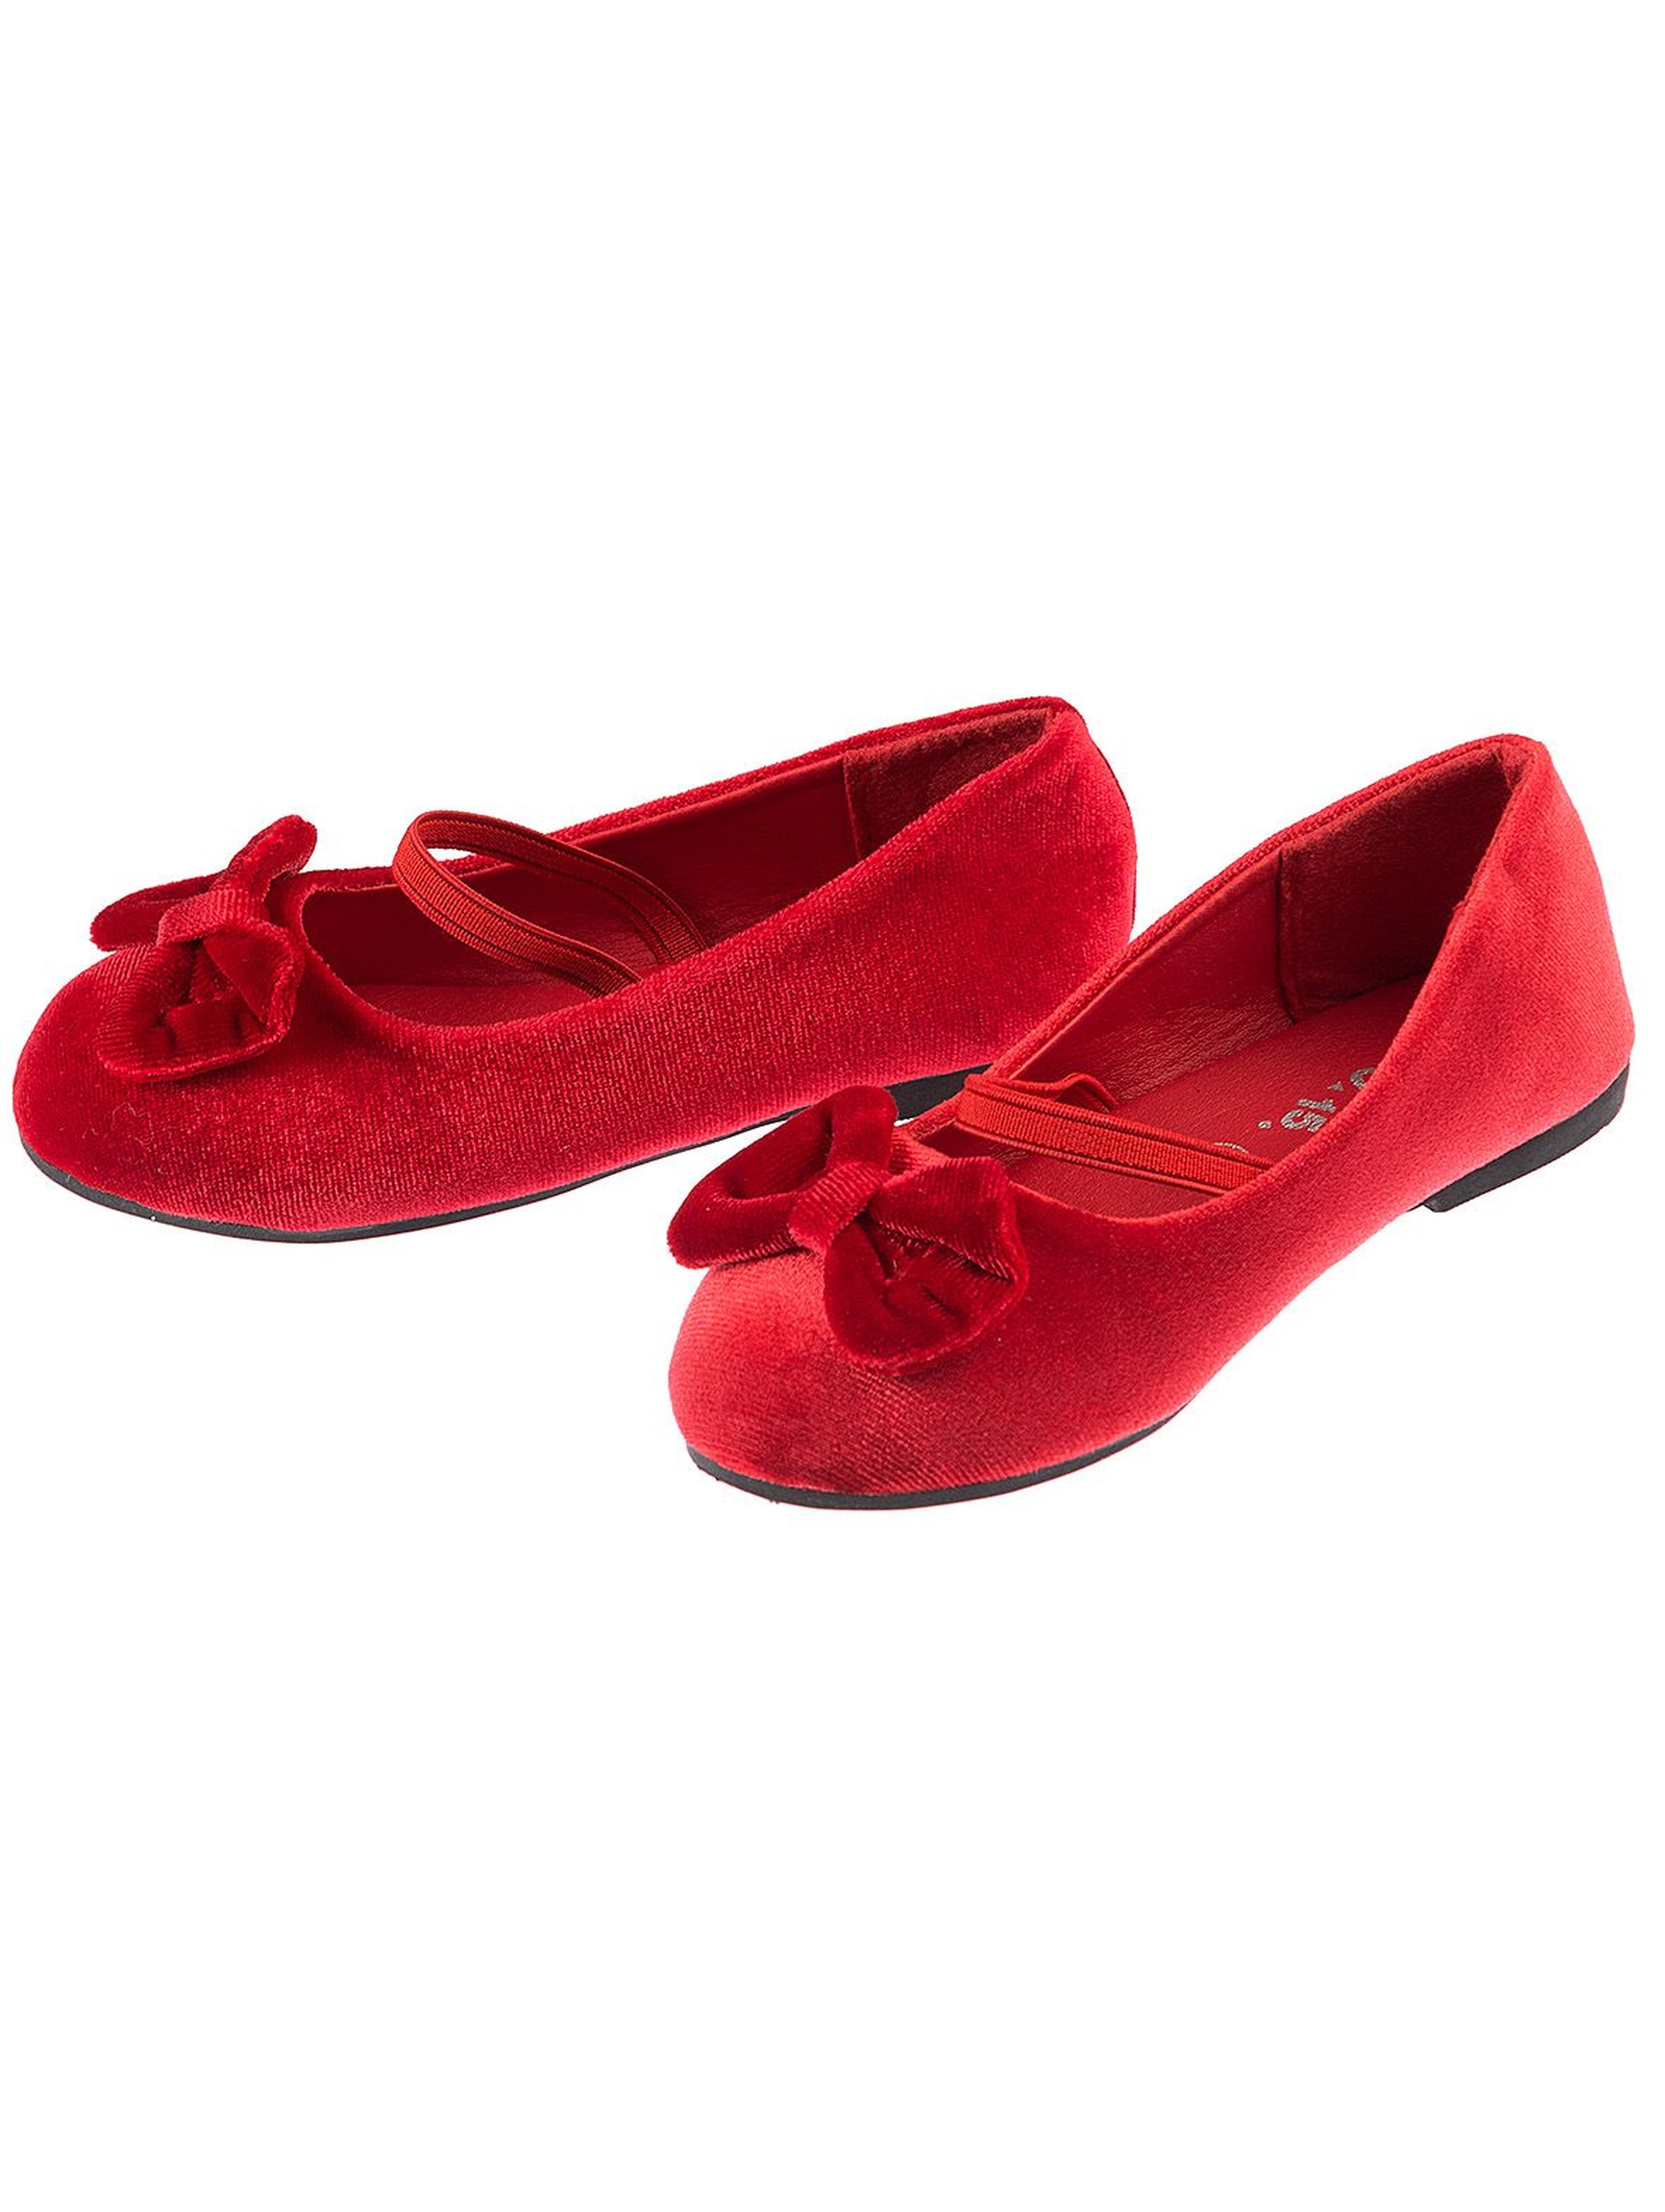 Buty baleriny dziewczęce czerwone z kokardą